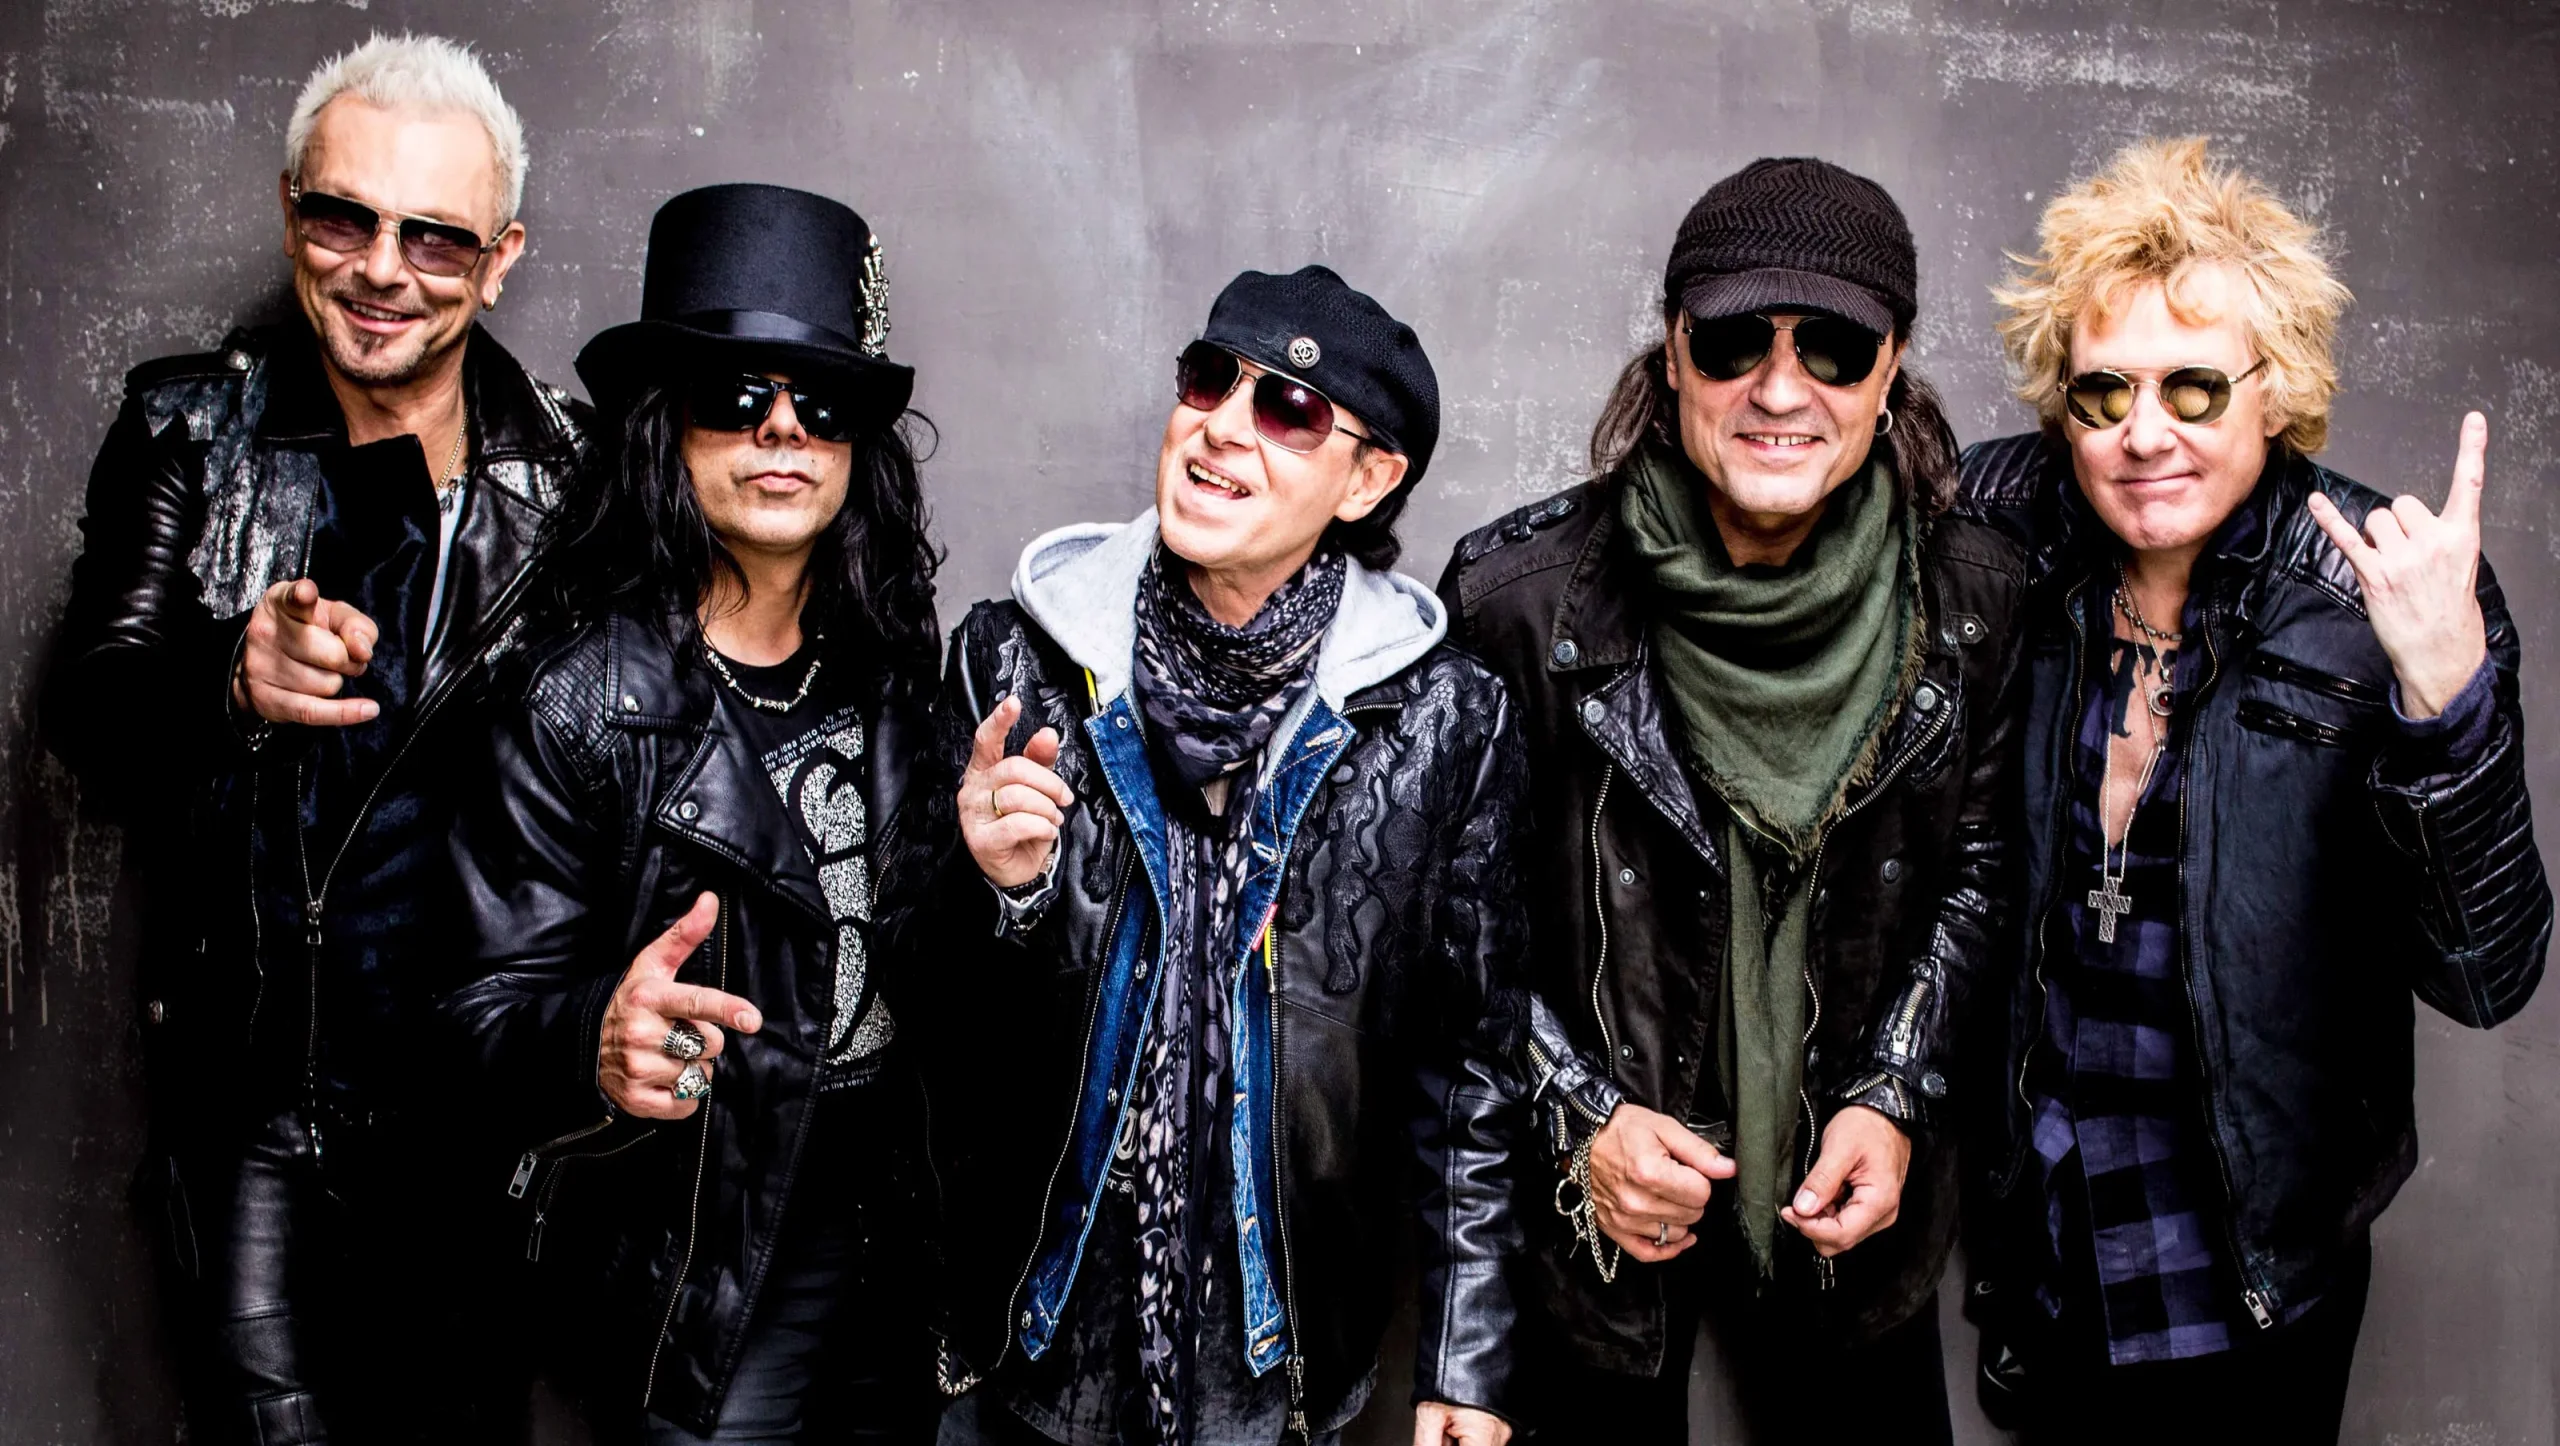 Συνεργασία Scorpions και Yoshiki σε μια ειδική εκτέλεση του ‘Wind Of Change’